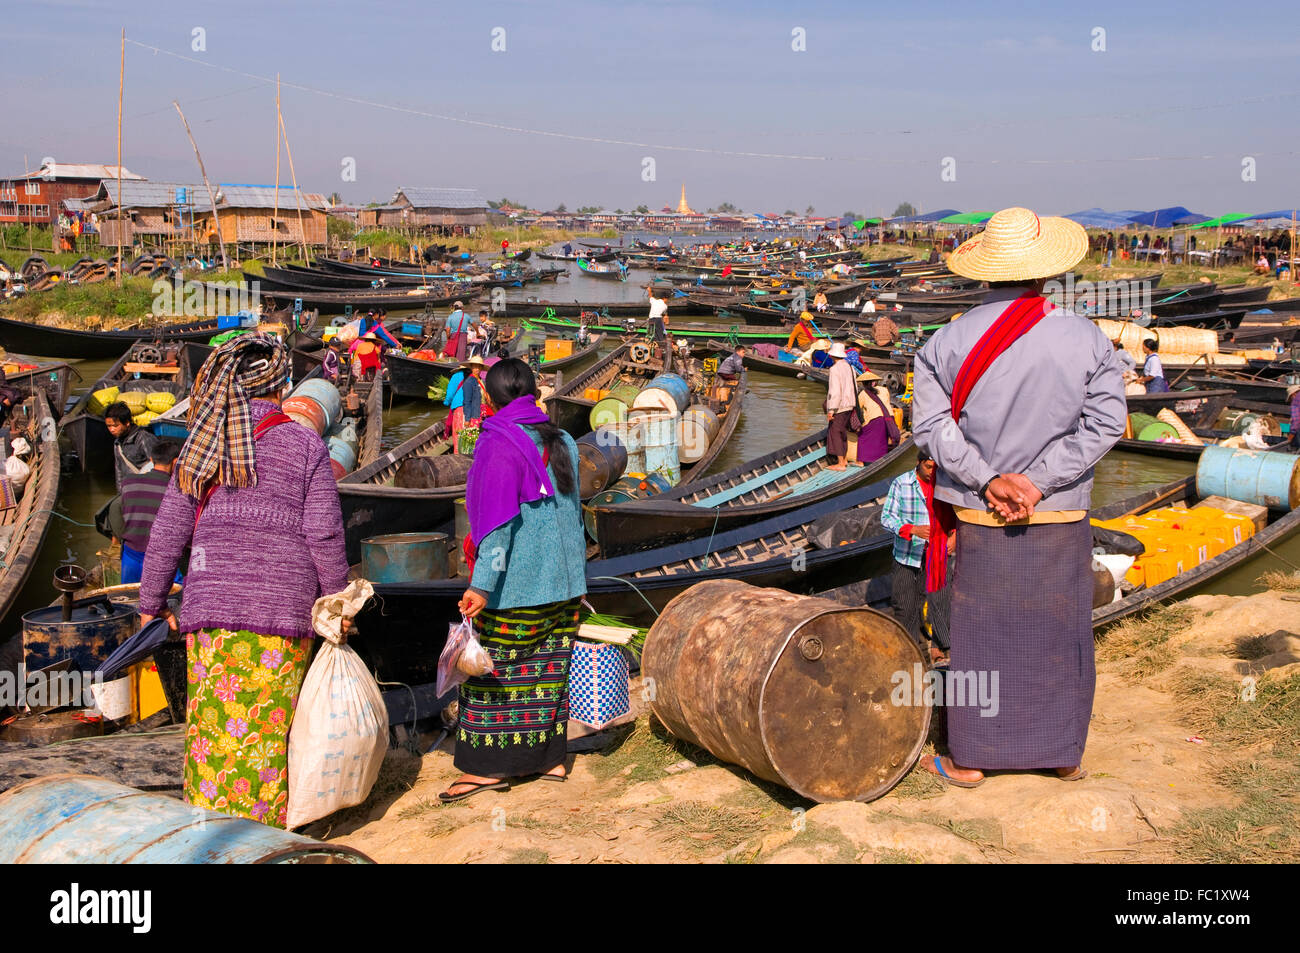 La trafficata barche da lavoro al mercato Nampan sul Lago Inle, Myanmar Foto Stock